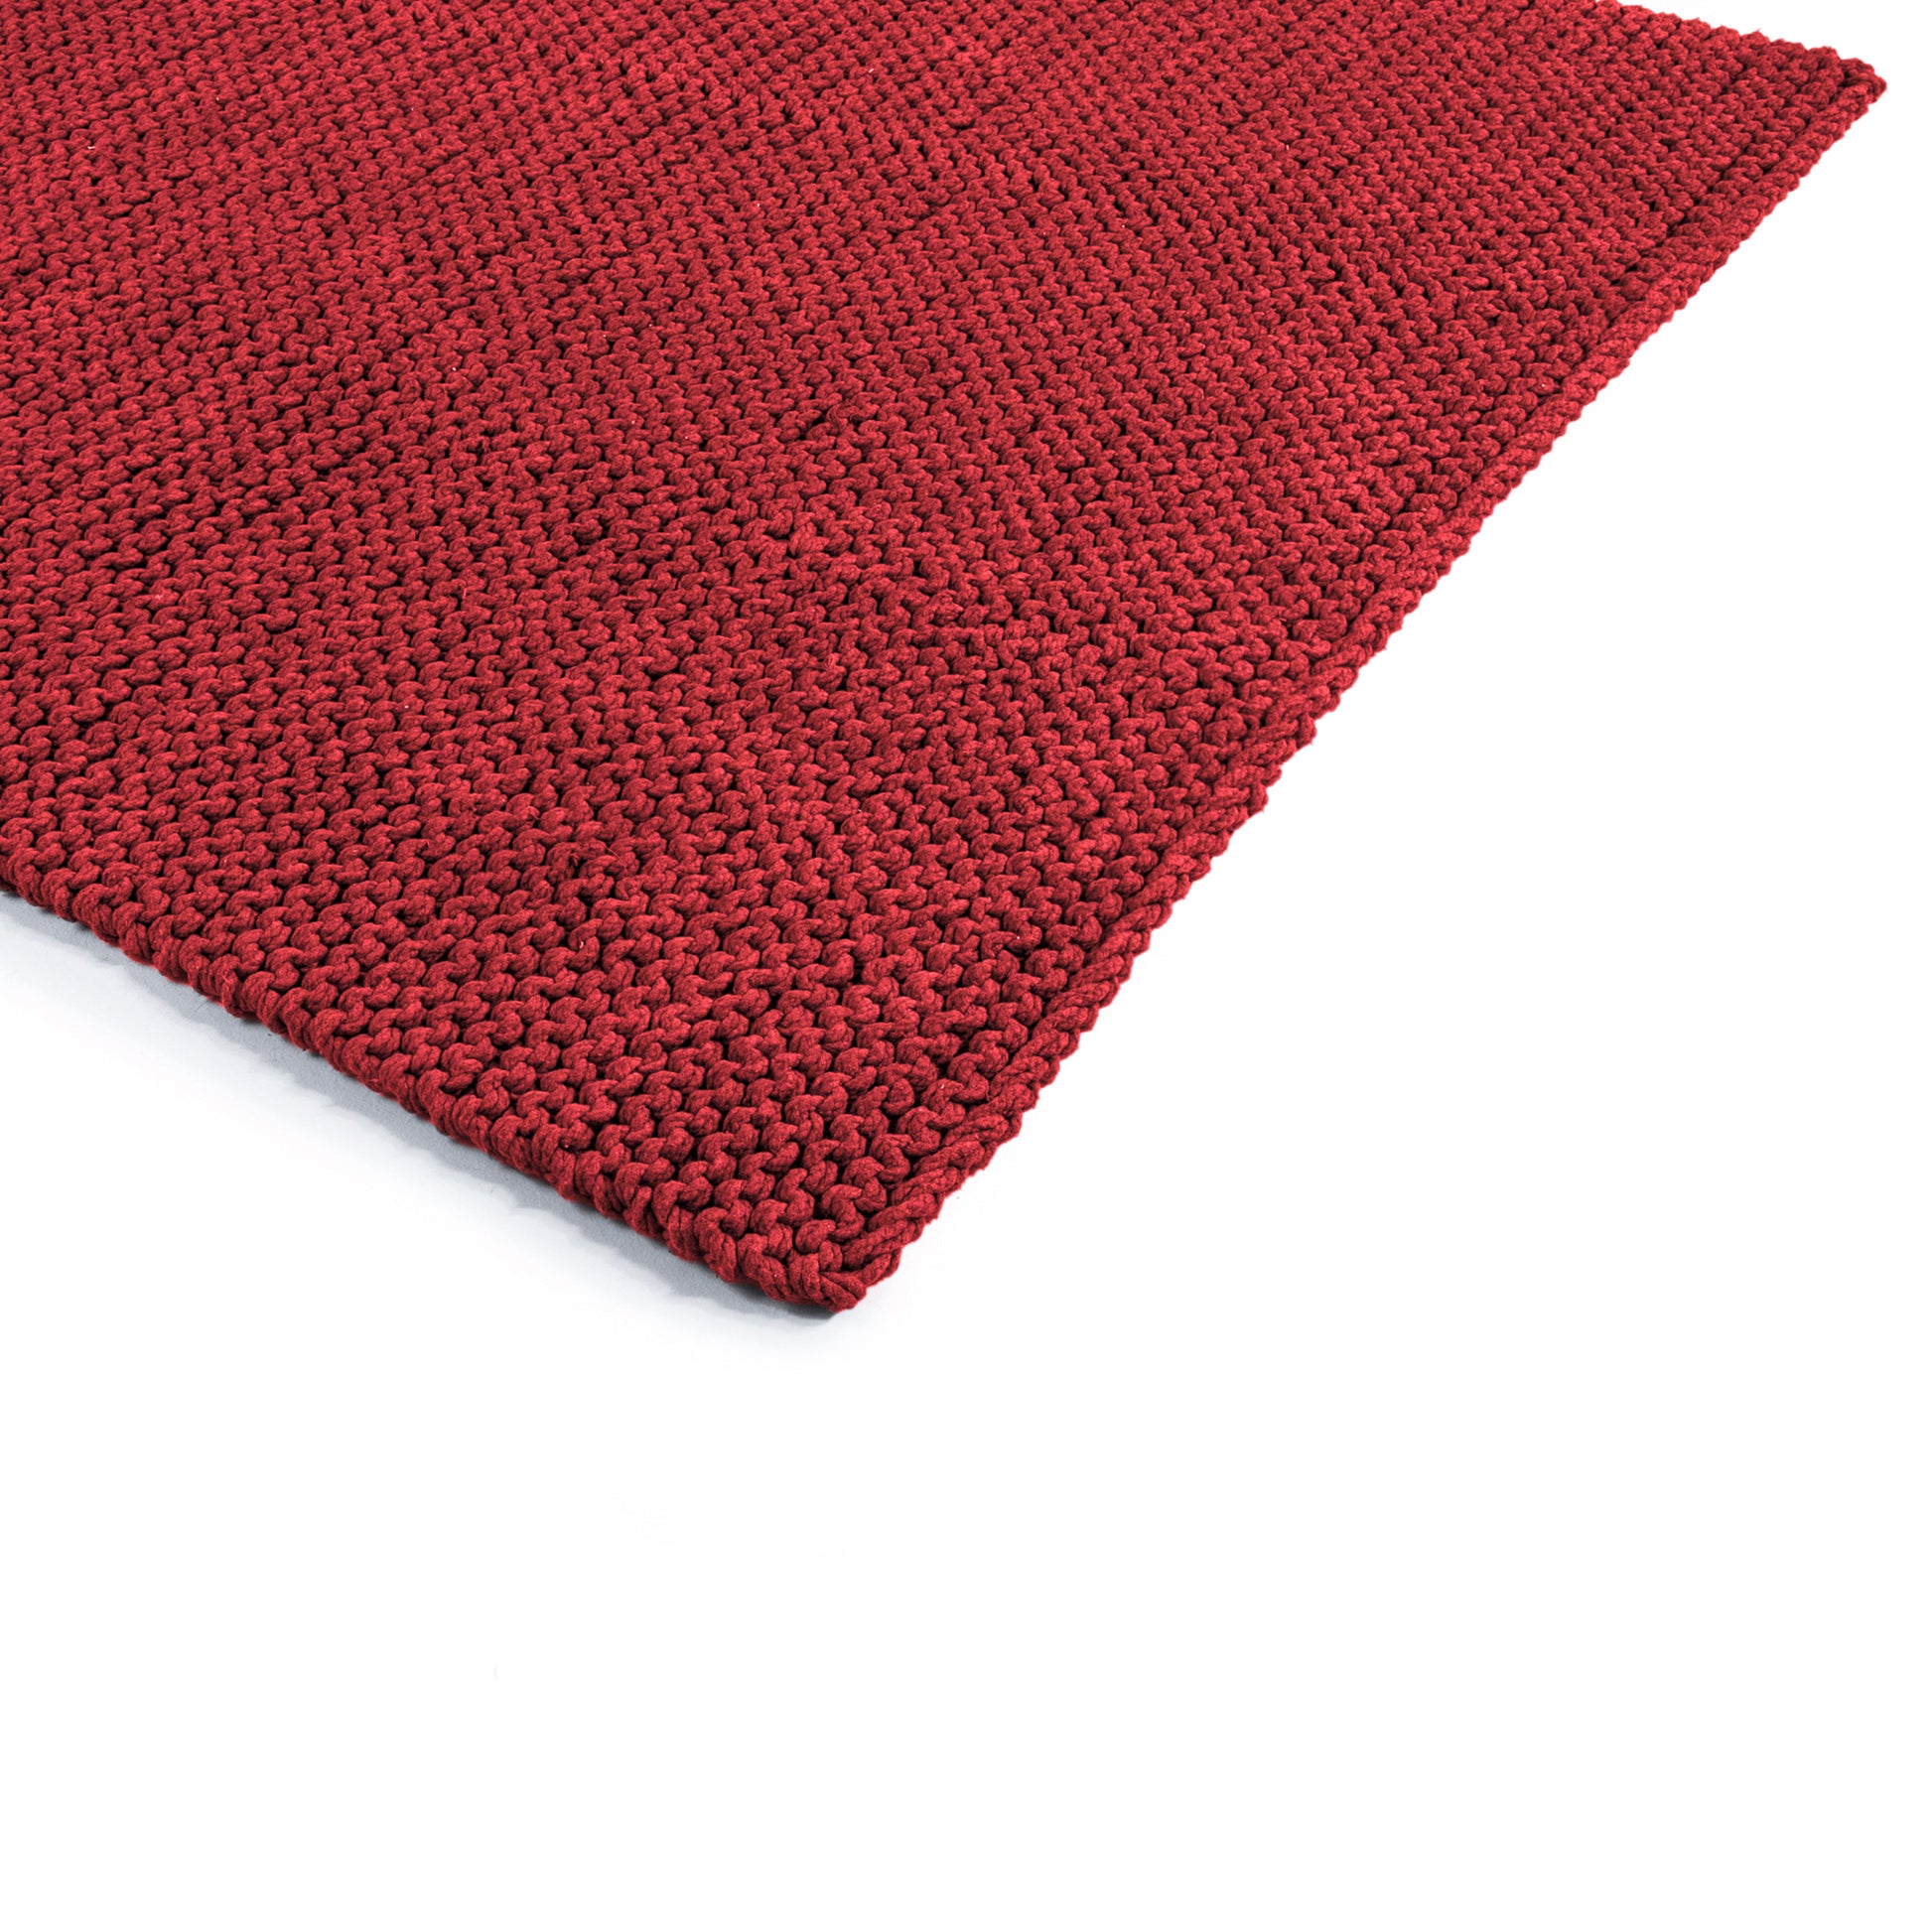 Tapete em tricô artesanal Vermelho, com fio 100% algodão. Dimensões: Largura - 150cm; Comprimento - 200cm. 